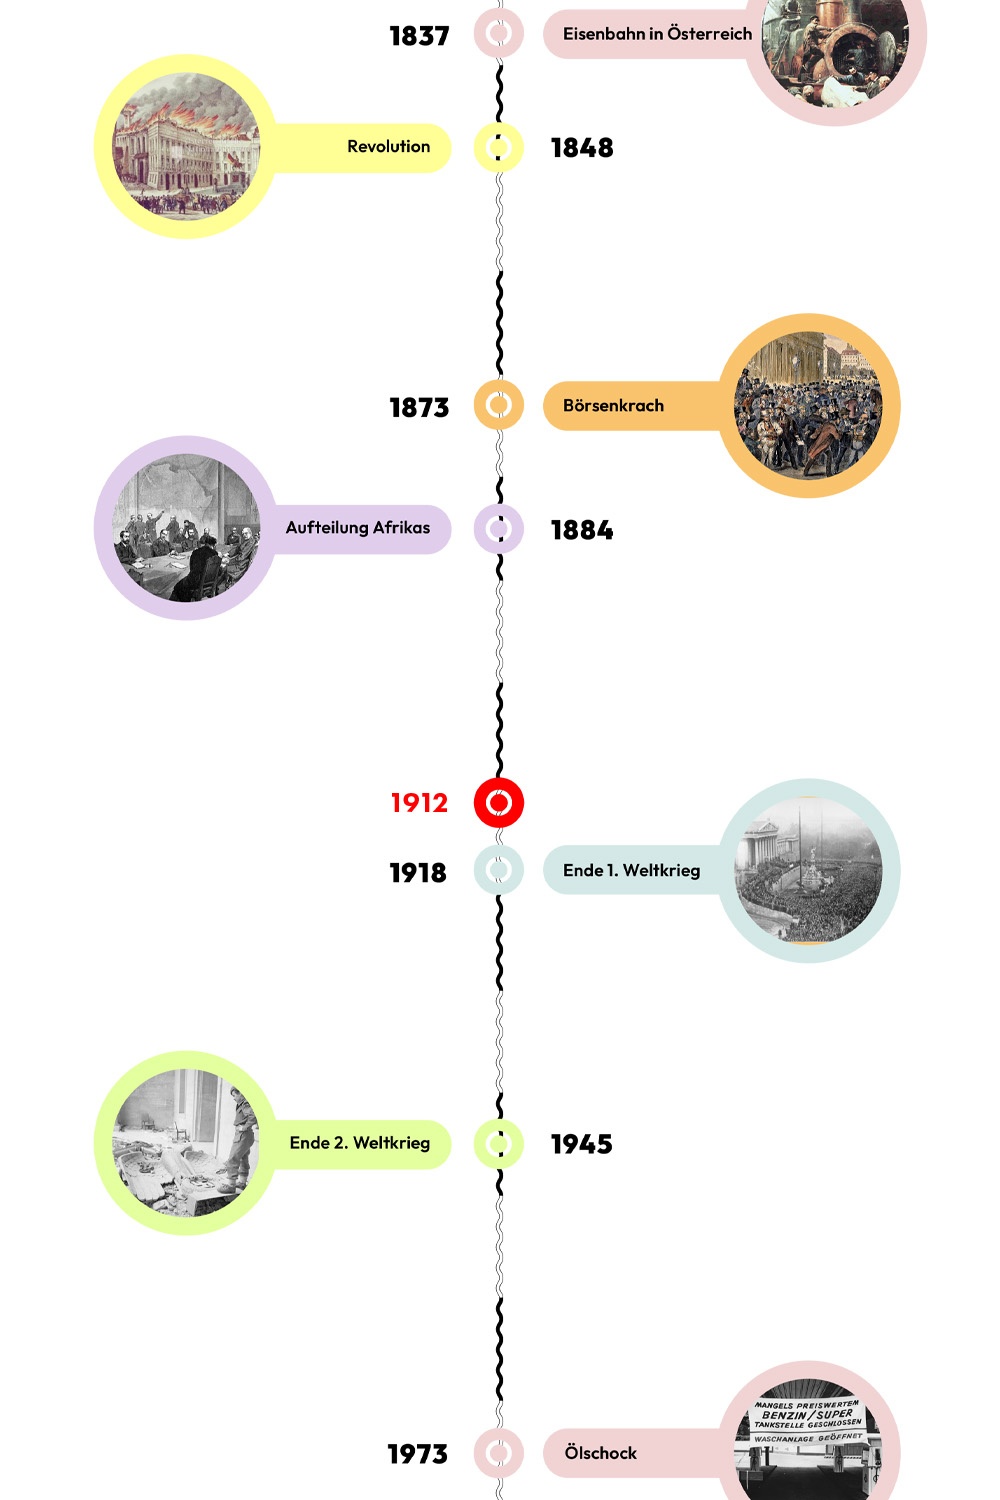 Zeitstrahl mit historischen Ereignissen - 1912 ist hervorgehoben. © wasbishergeschah.at